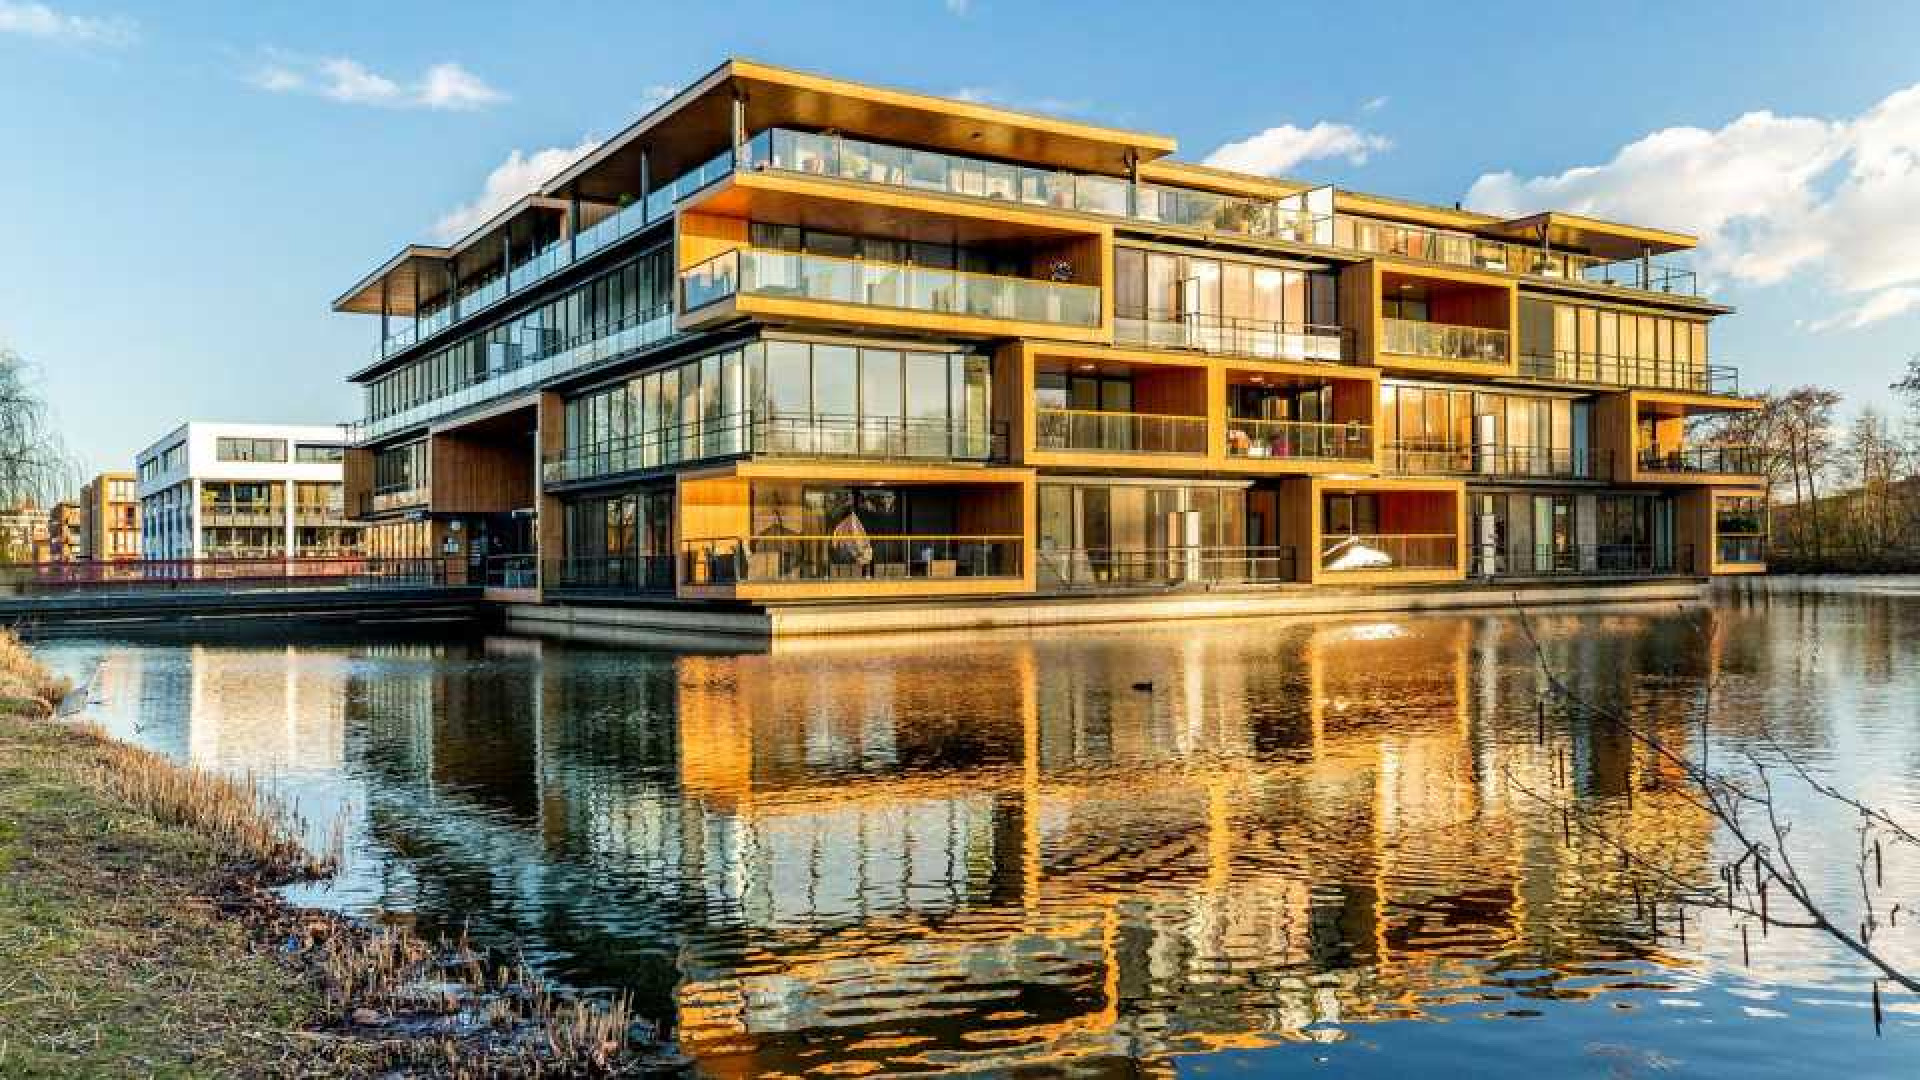 Dre Hazes koopt dit zeer luxe appartement in Rotterdam. Zie foto's